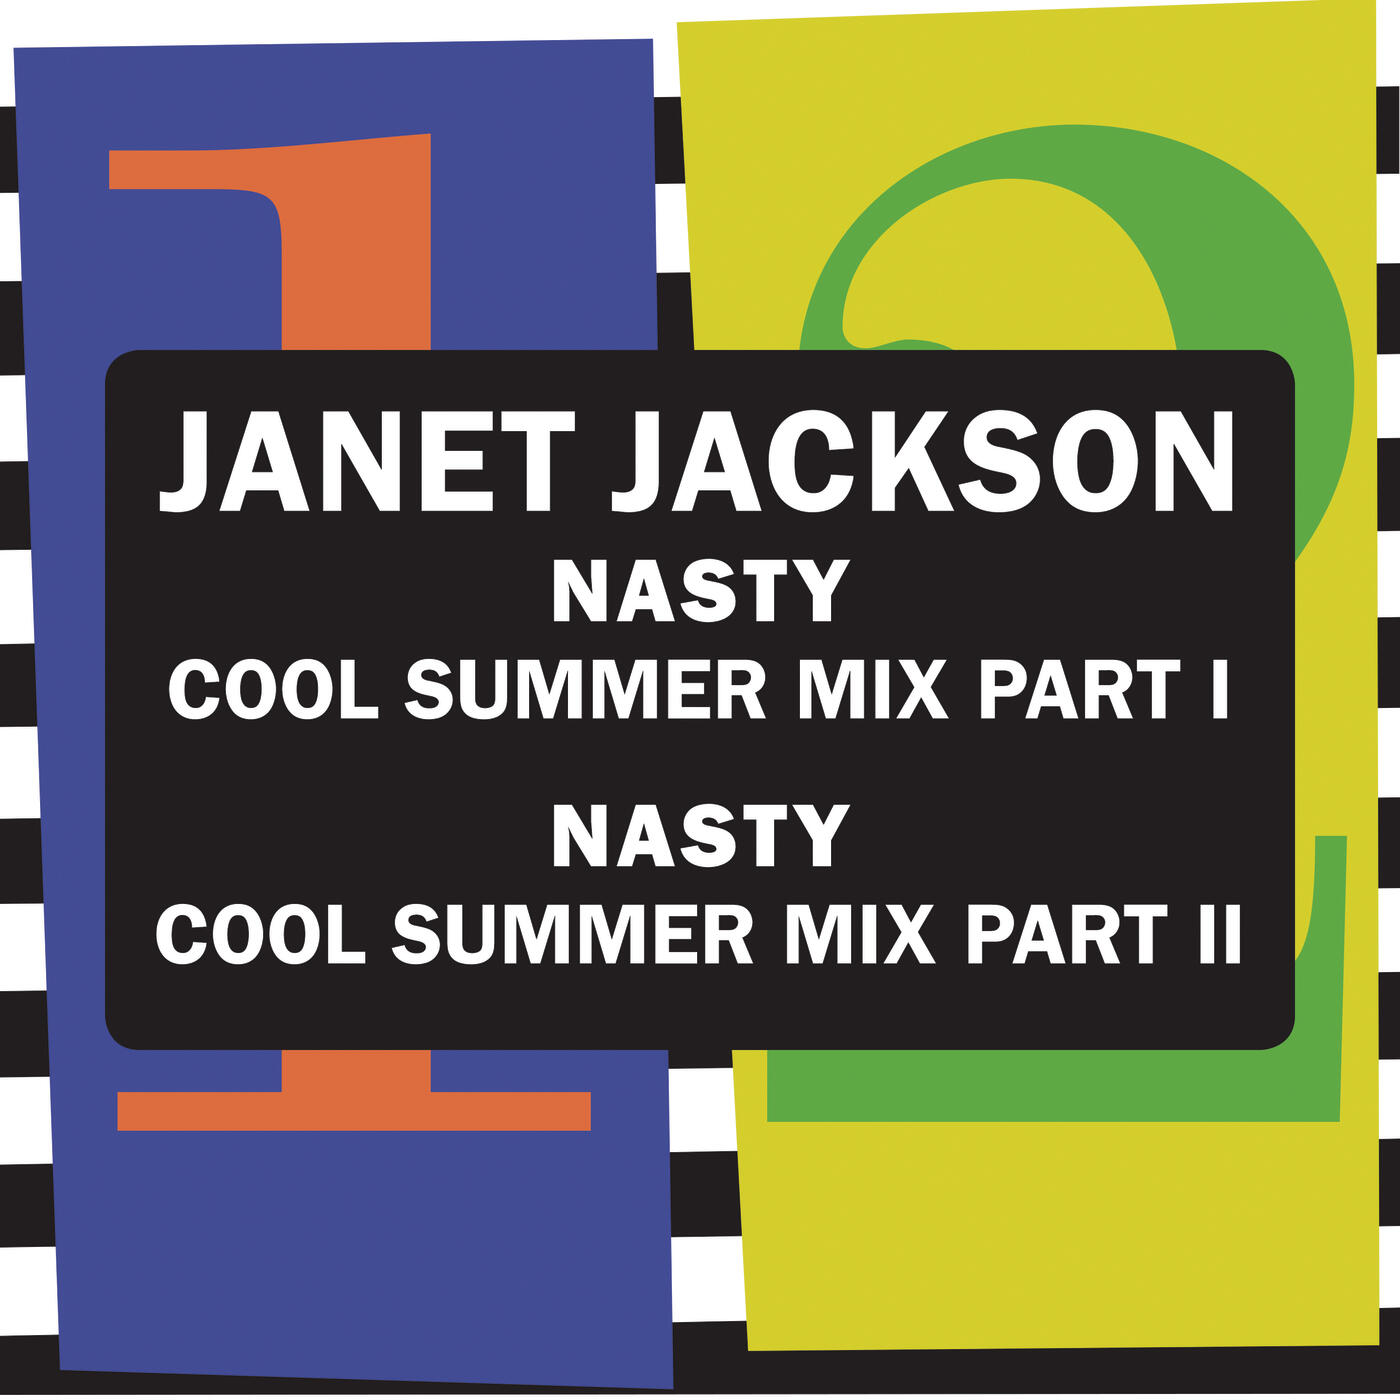 Janet Jackson Nasty Iheartradio